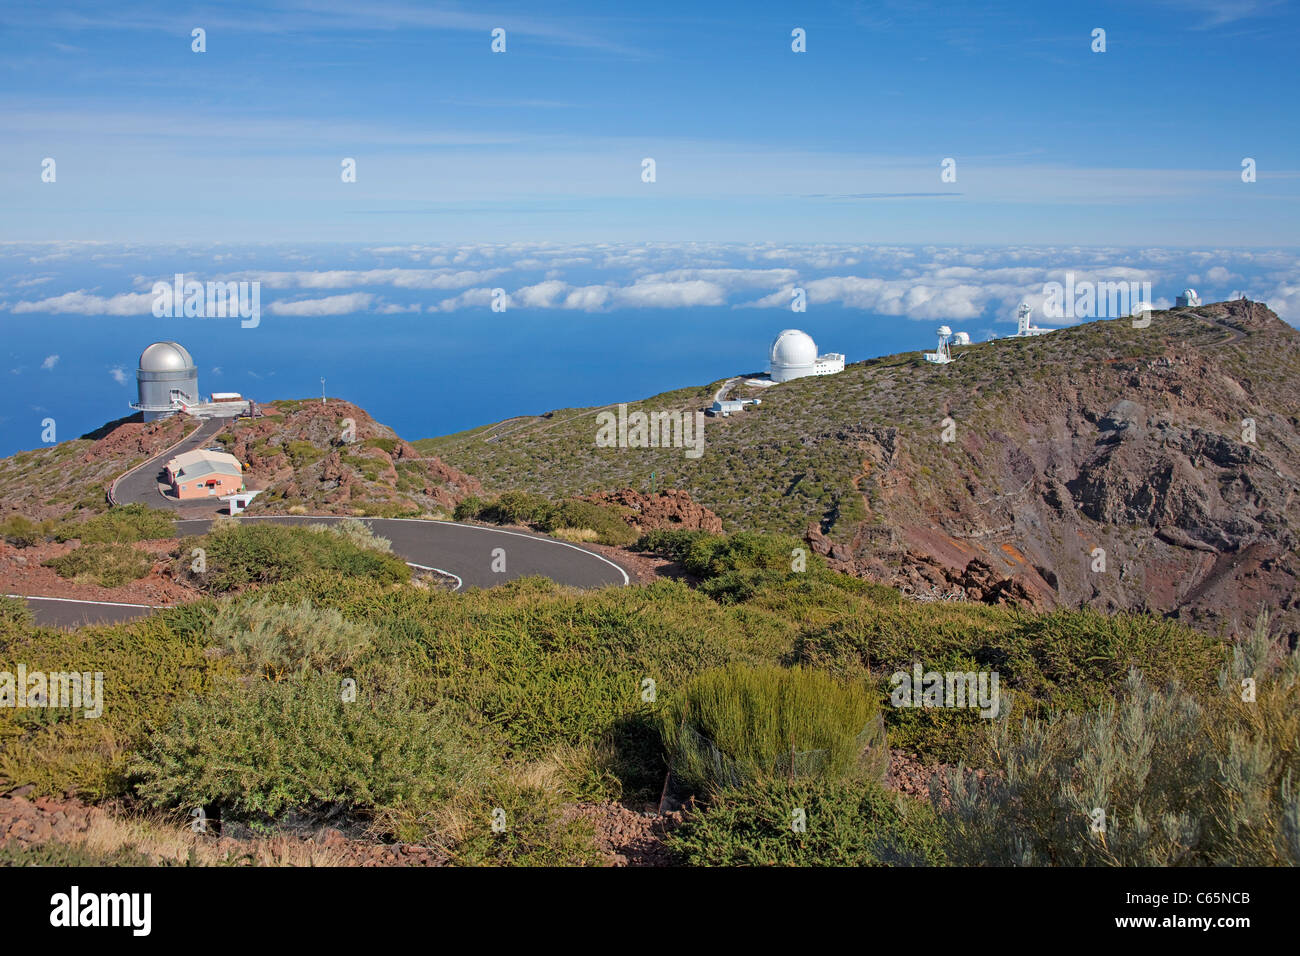 Osservatorio astronomico sulla sommità del Roque de los Muchachos, Parque Nacional de la Caldera de Taburiente, isola di La Palma, Isole canarie, Spagna, Europa Foto Stock